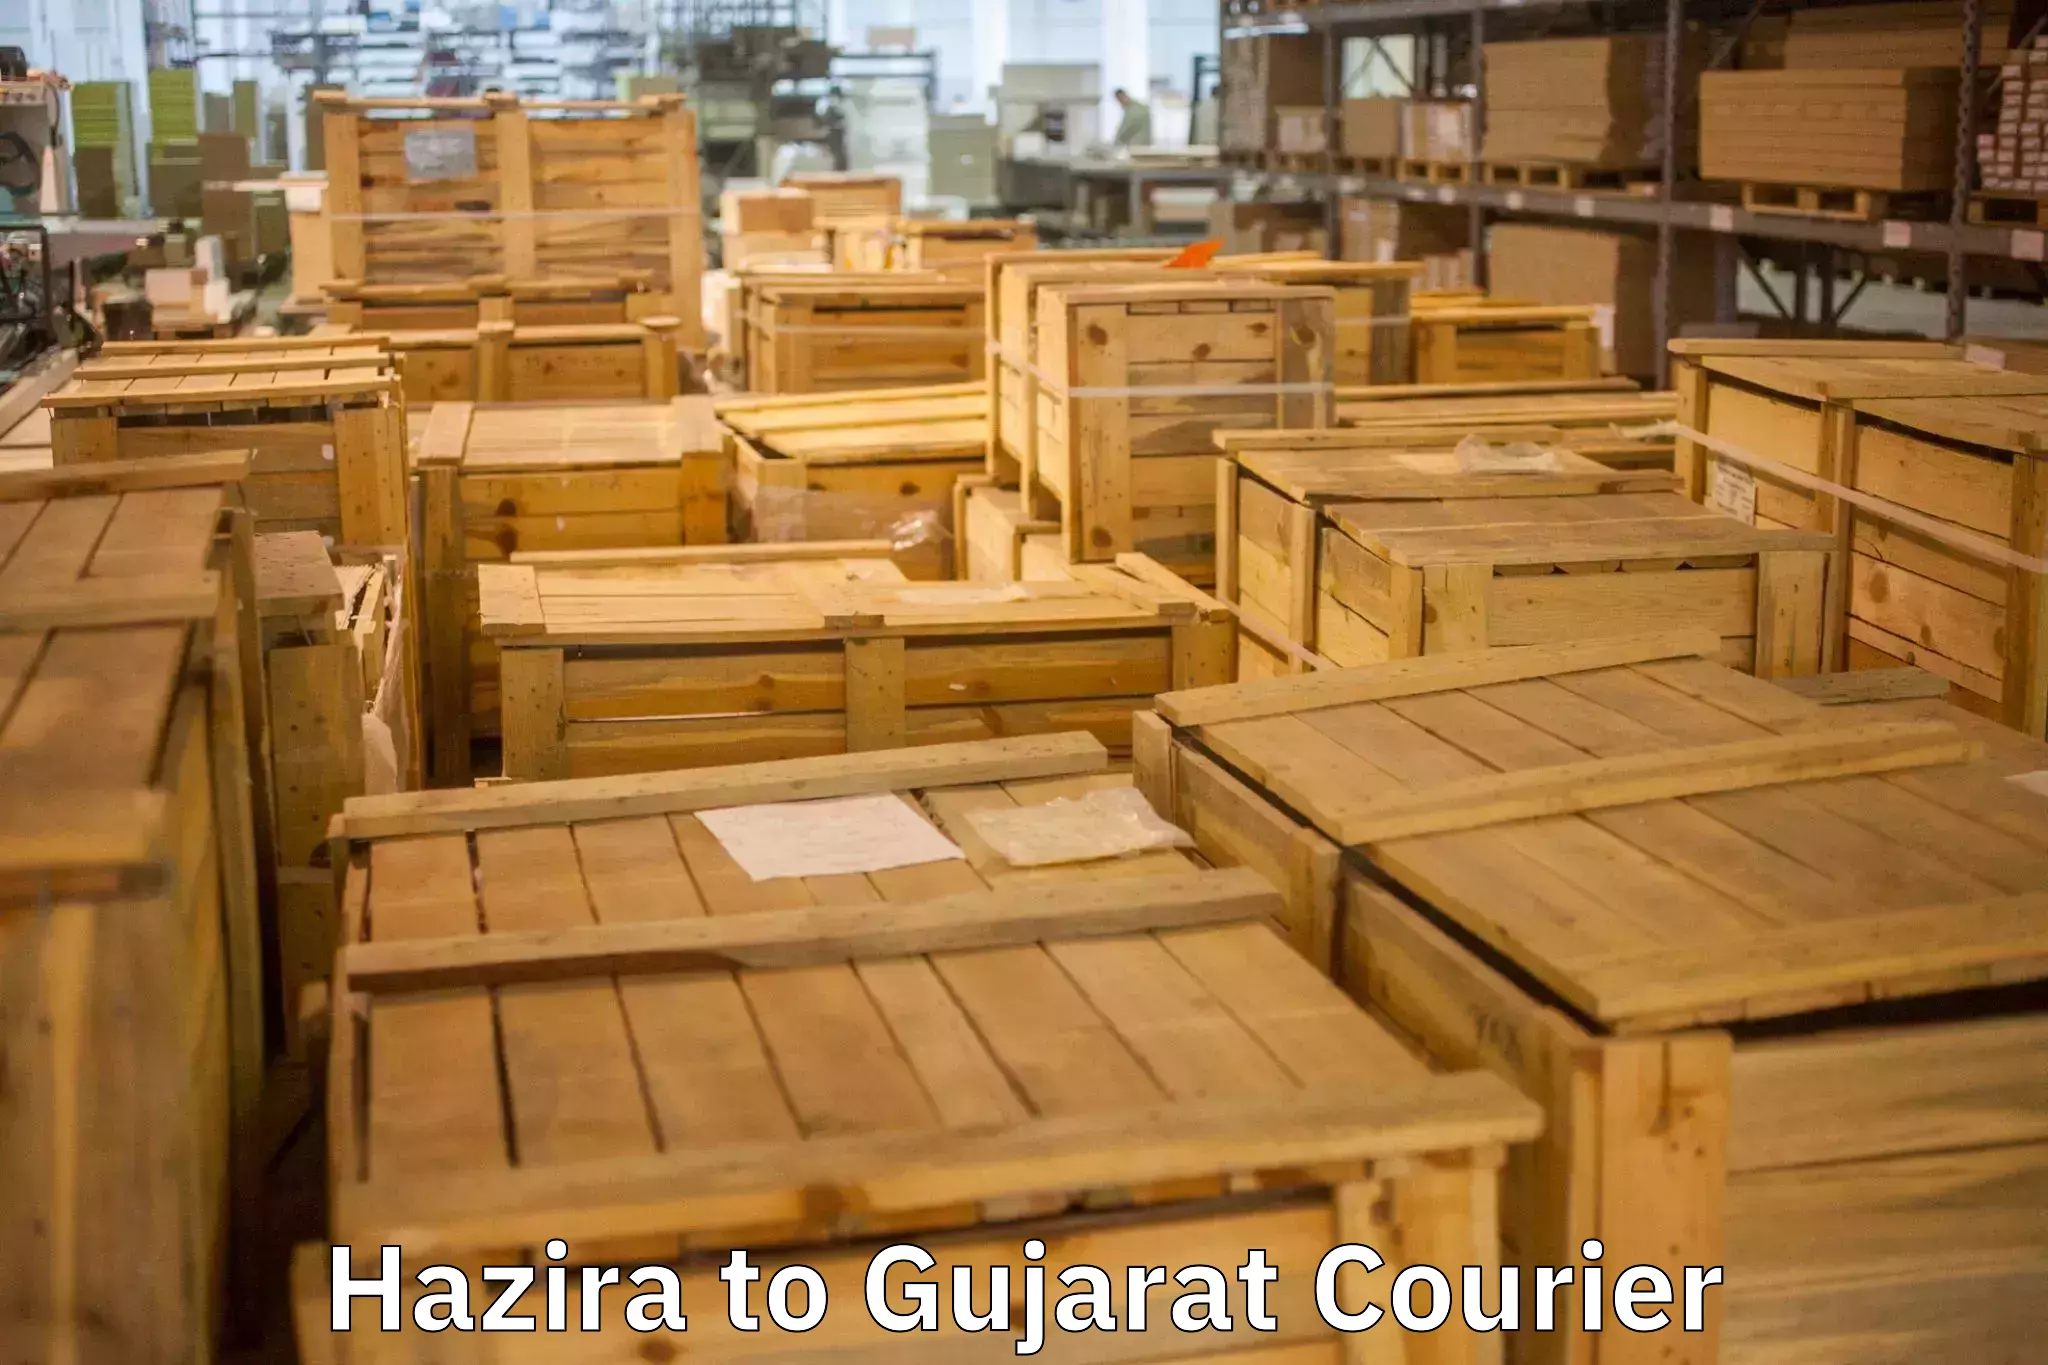 Expert goods movers Hazira to Dhanera